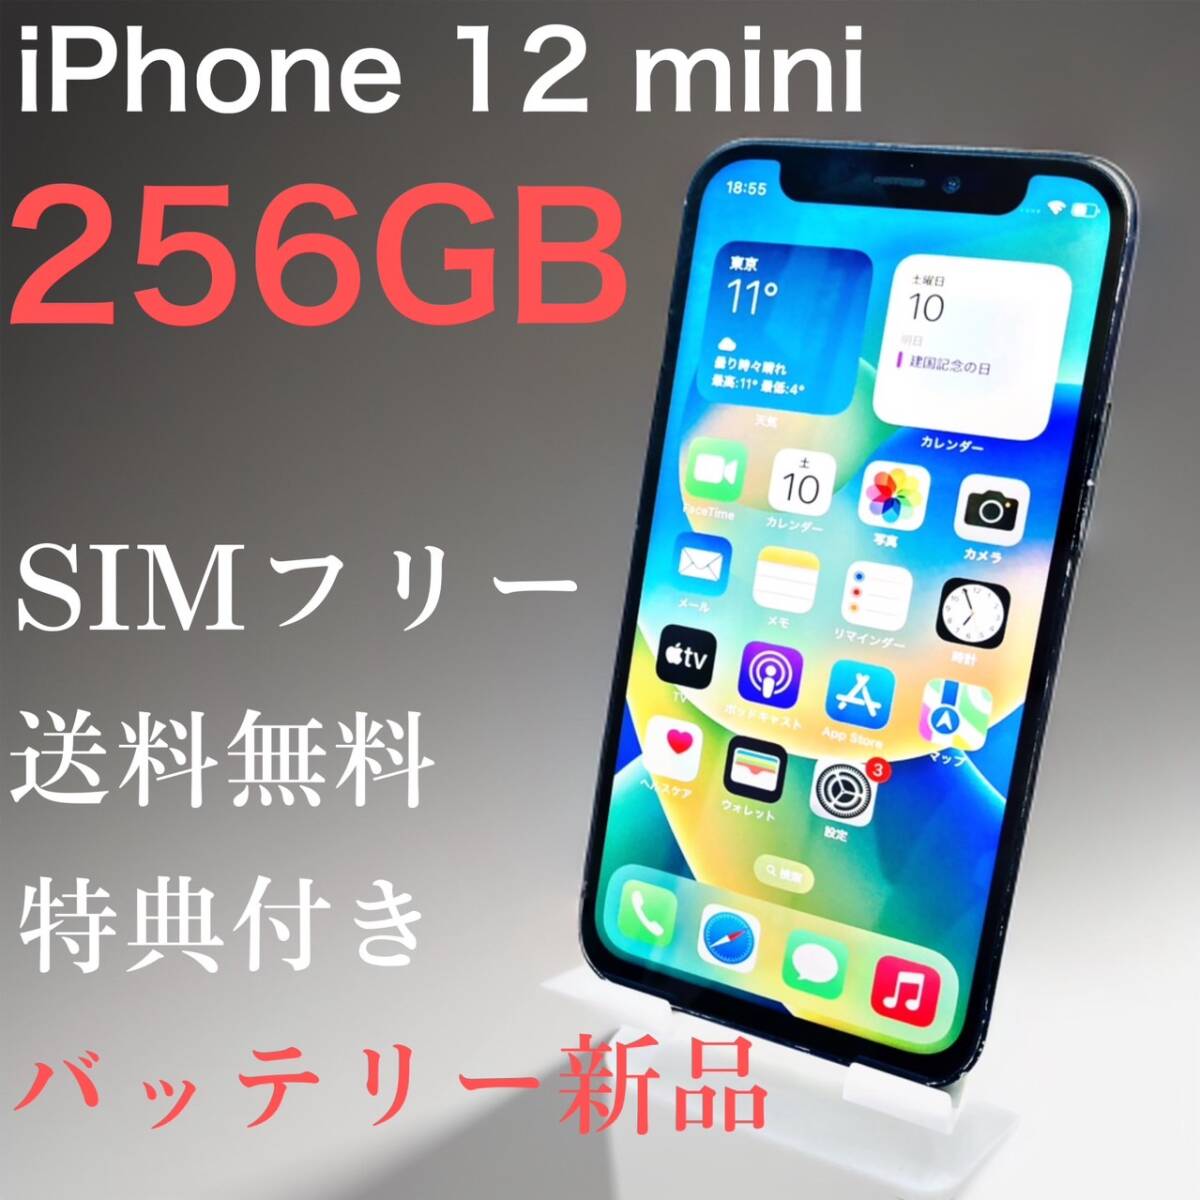 経典ブランド iPhone 12 mini 256GB ブラック SIMフリー【特典